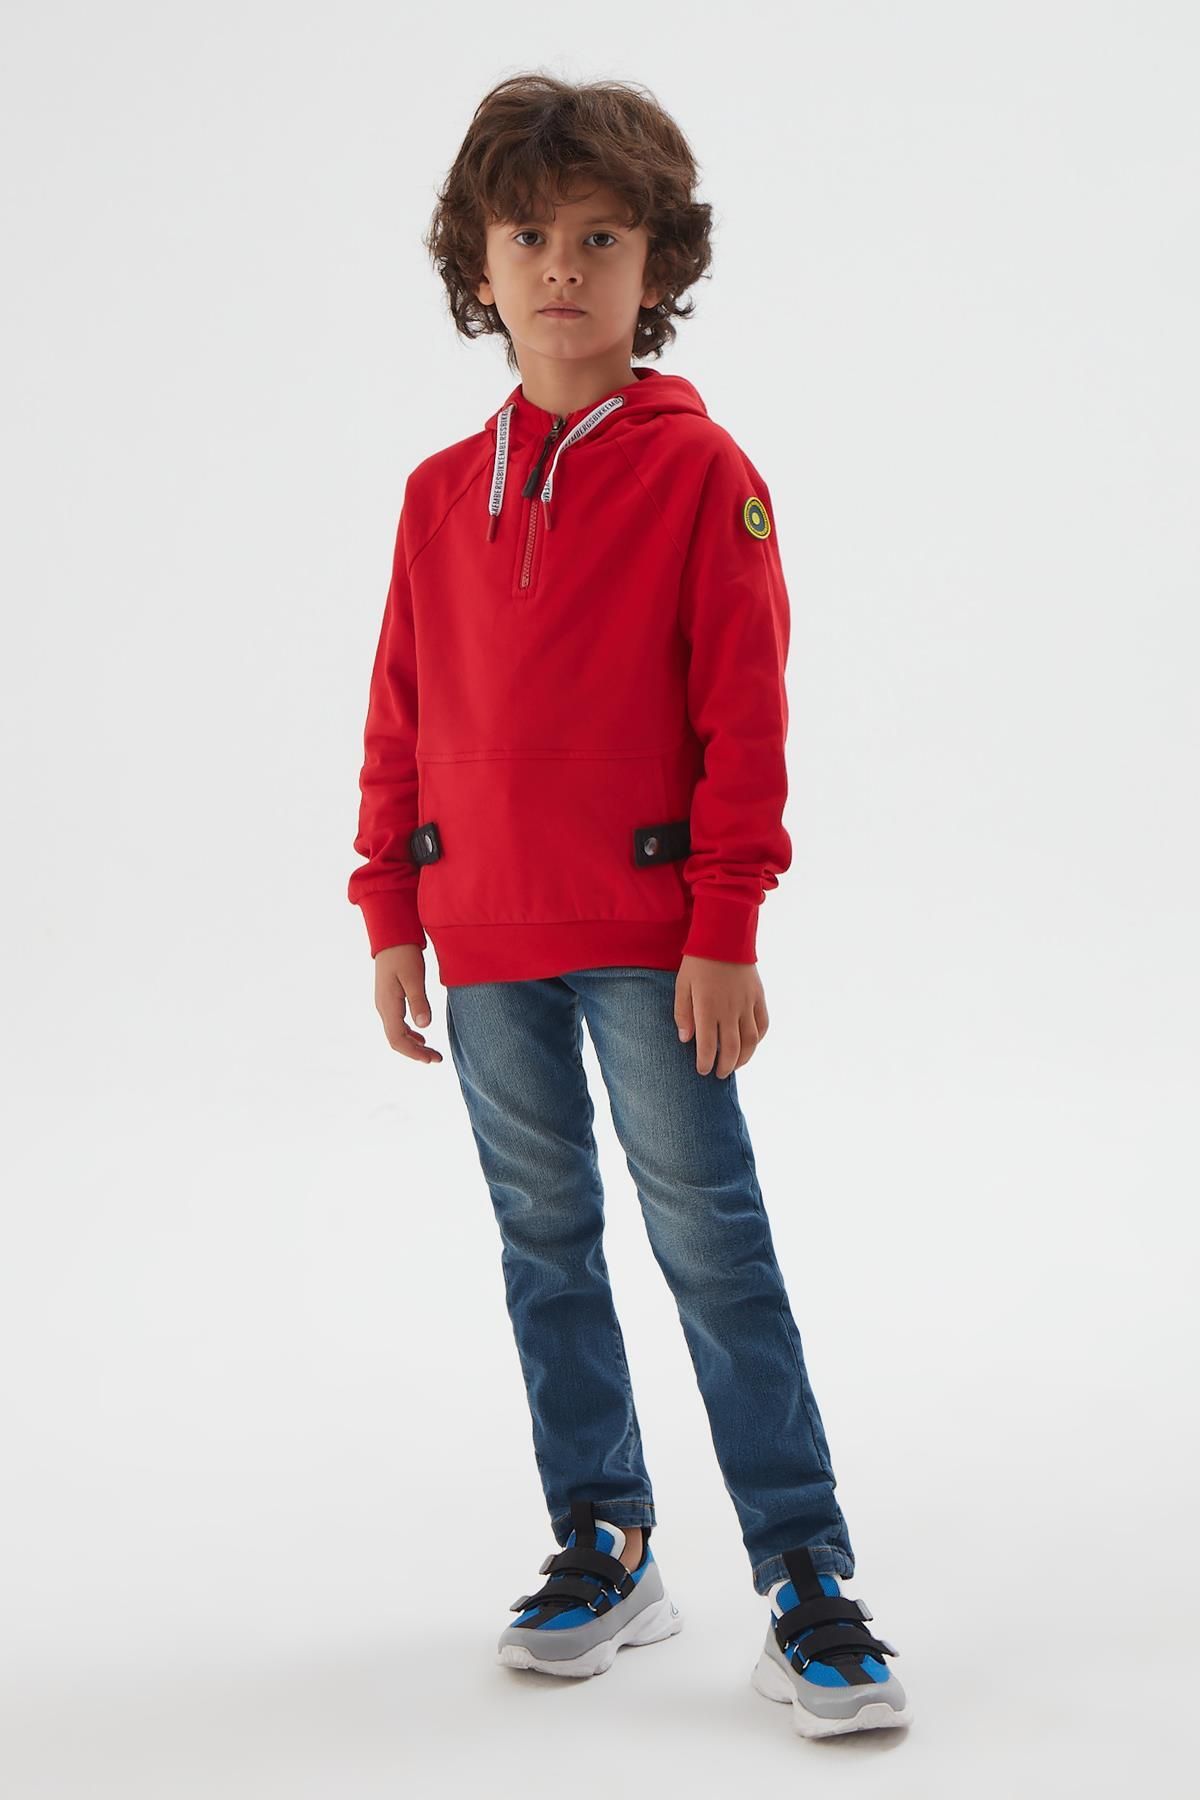 Bikkembergs Bg Store Erkek Çocuk Kırmızı Sweatshirt 22fw0bk1224